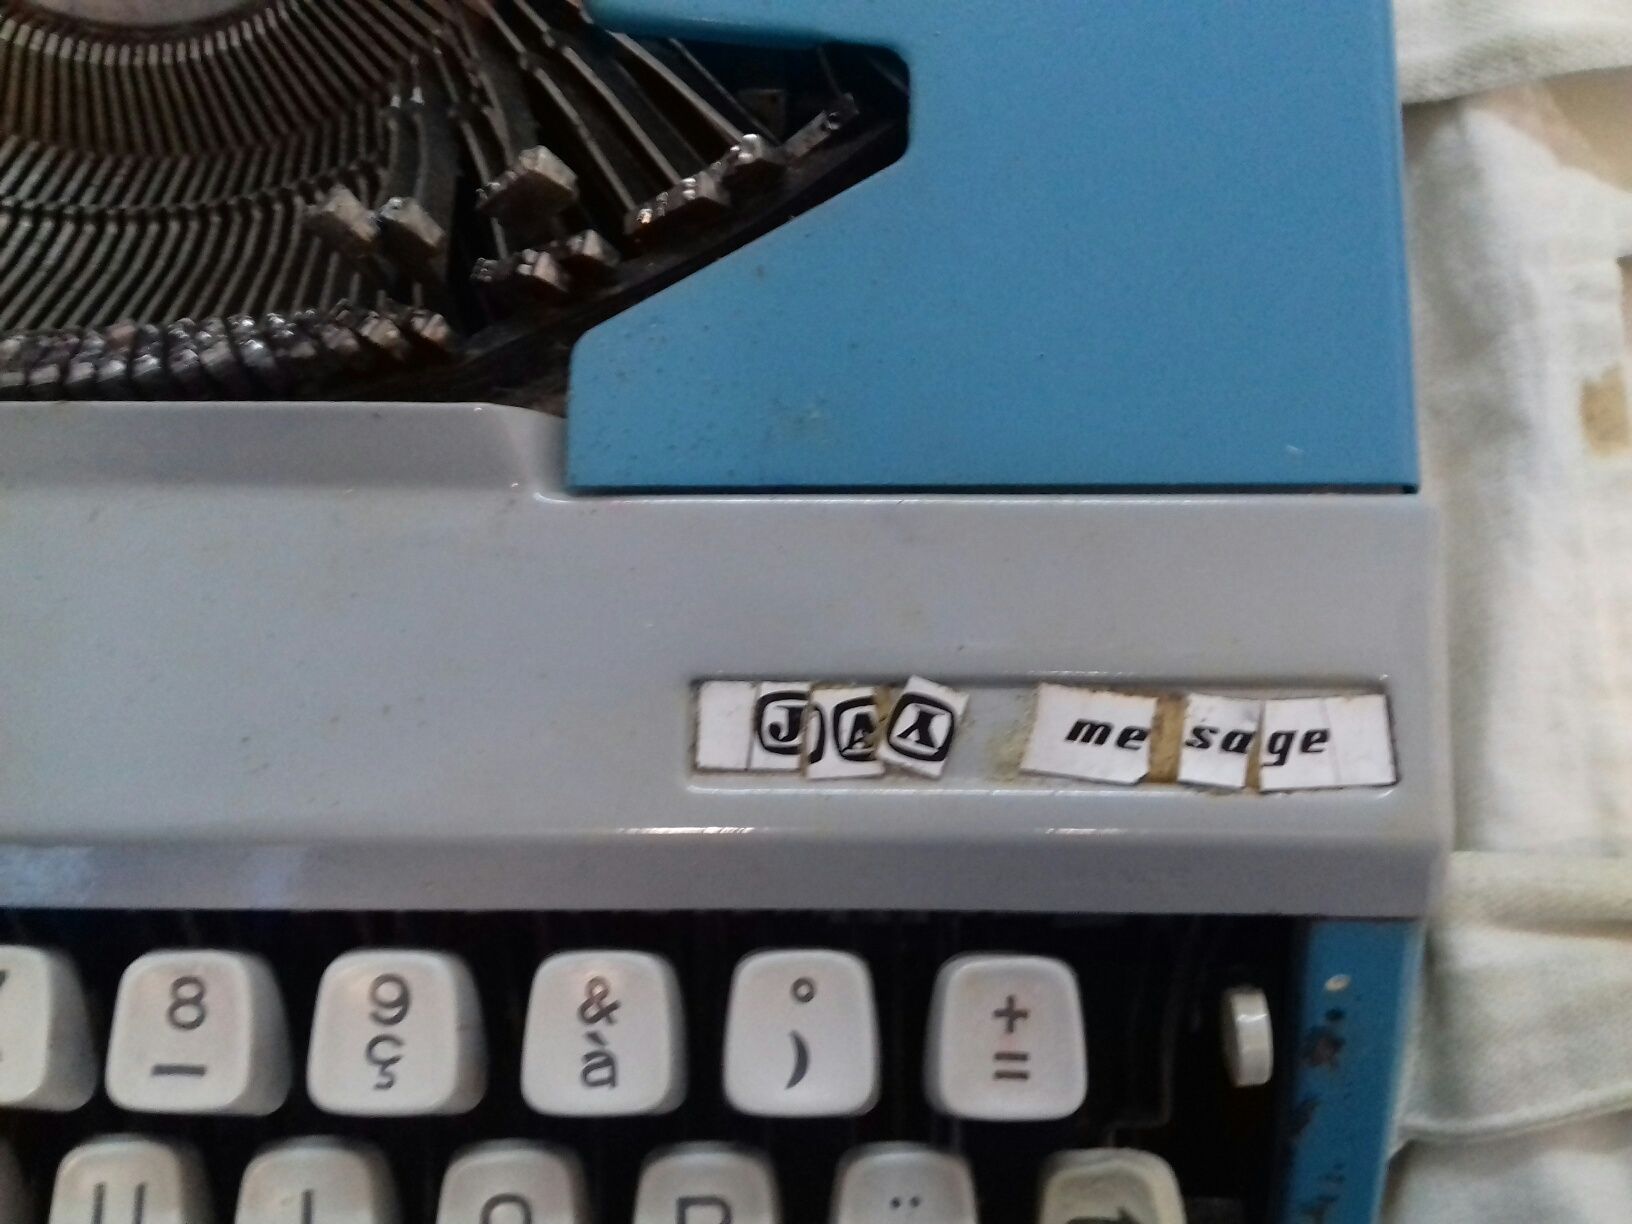 Máquina de escrever francesa